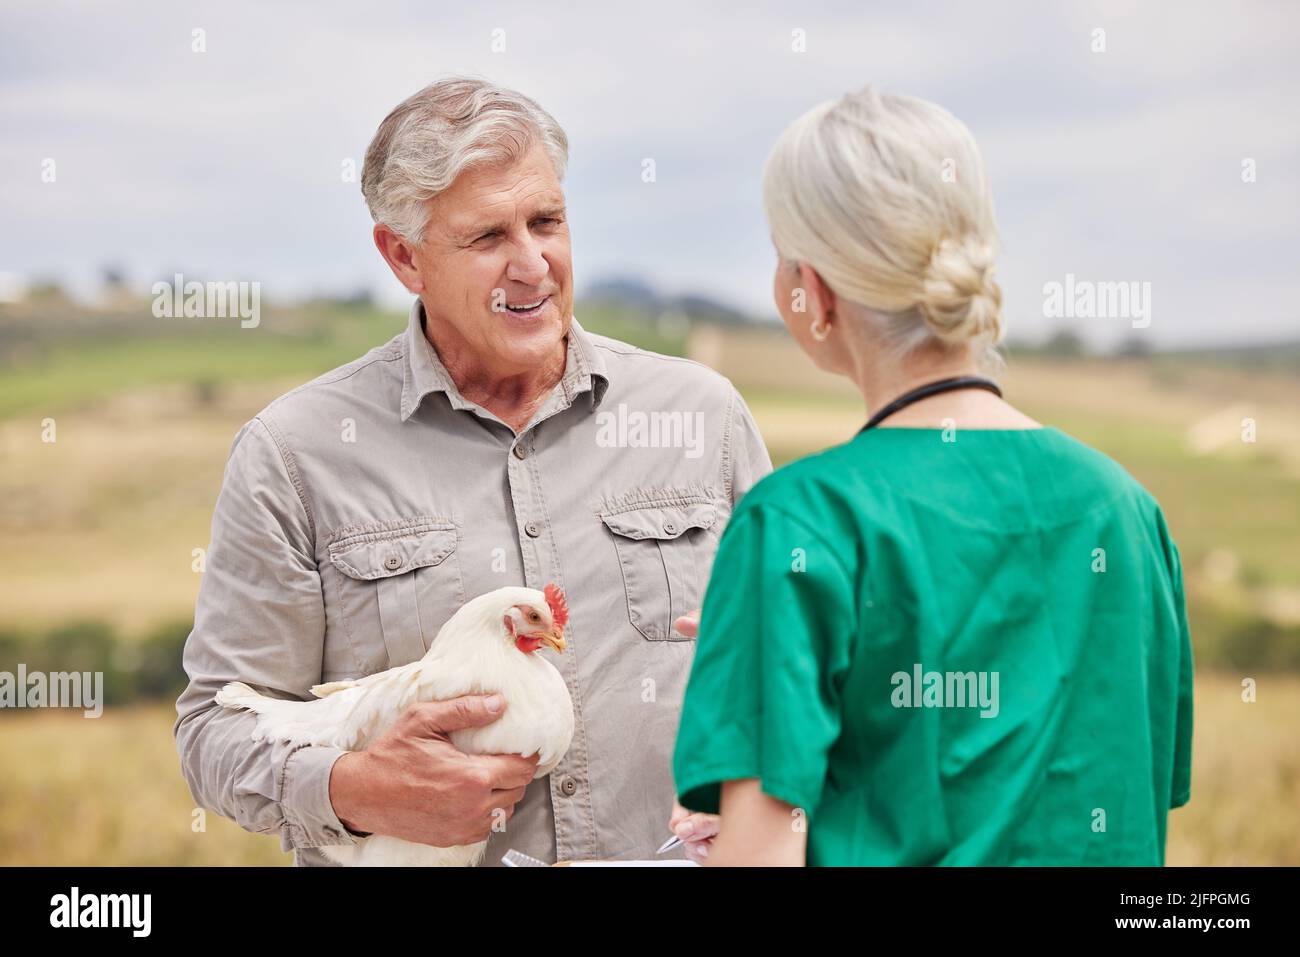 Haben Sie auch Ernährungsempfehlungen für mein Vieh? Aufnahme eines Mannes, der auf einer Geflügelfarm ein Gespräch mit einem Tierarzt geführt hat. Stockfoto